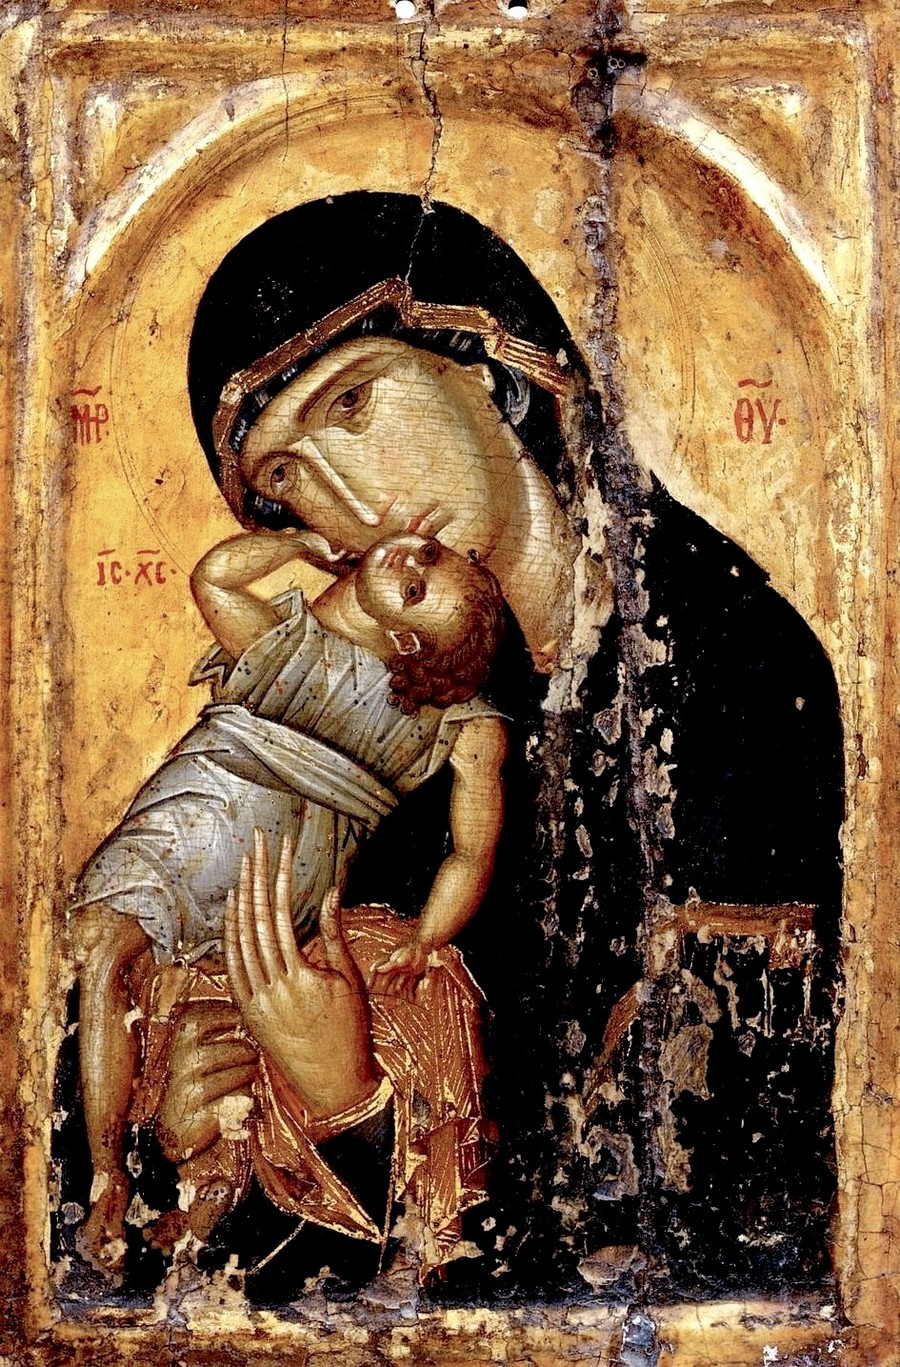 Икона Божией Матери "Пелагонитисса" ("Взыграние Младенца"). Византия, начало XV века. Монастырь Святой Екатерины на Синае.